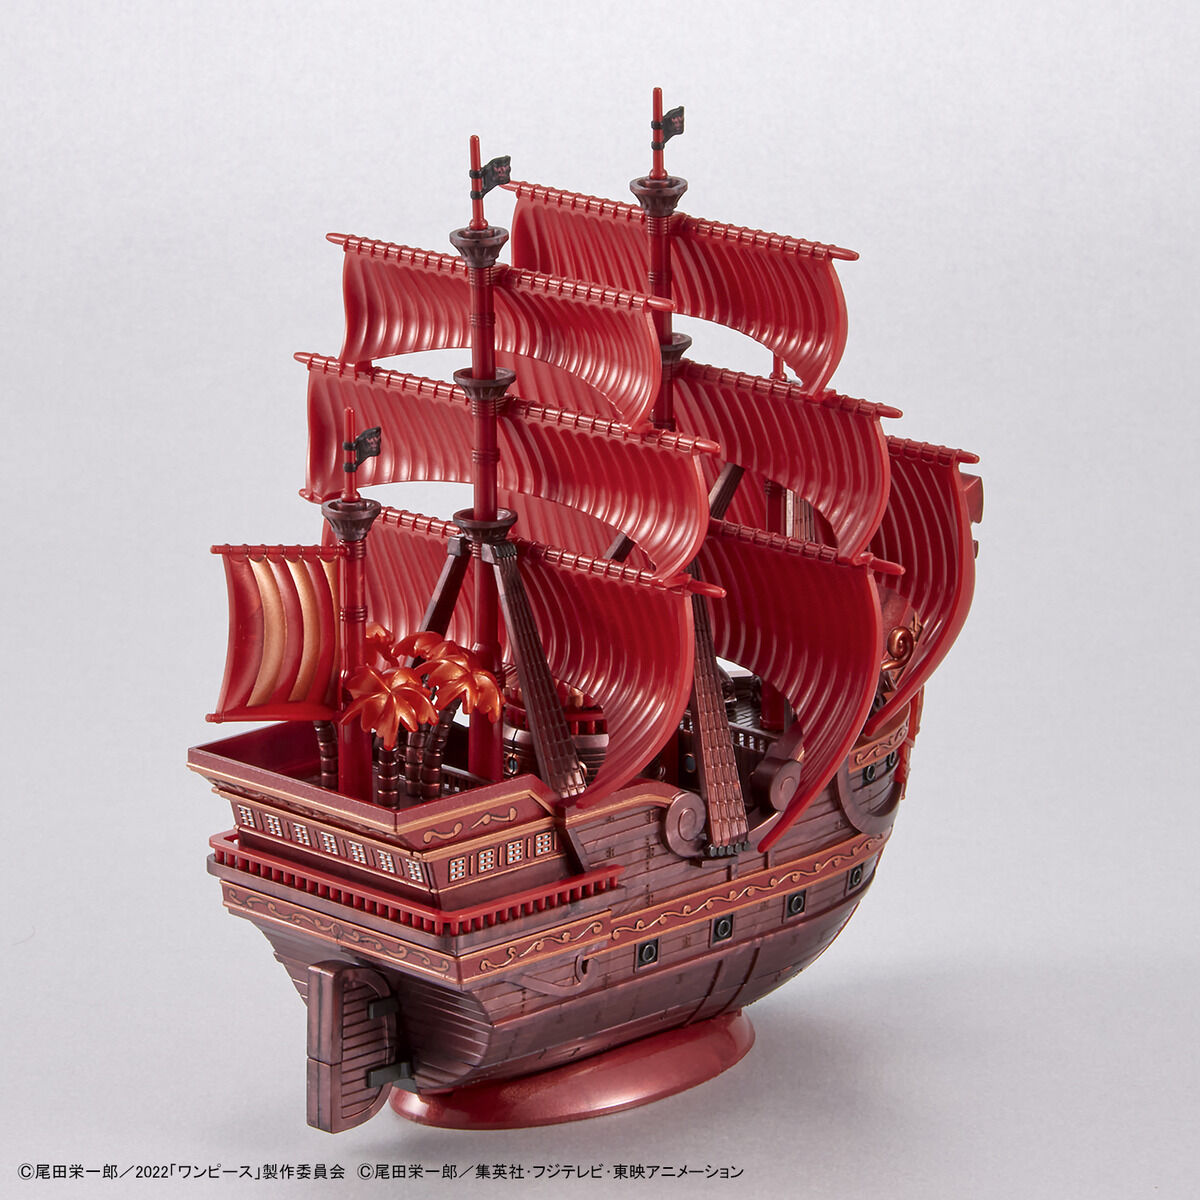 ワンピース偉大なる船コレクション レッド・フォース号「FILM RED」公開記念カラーVer. 04